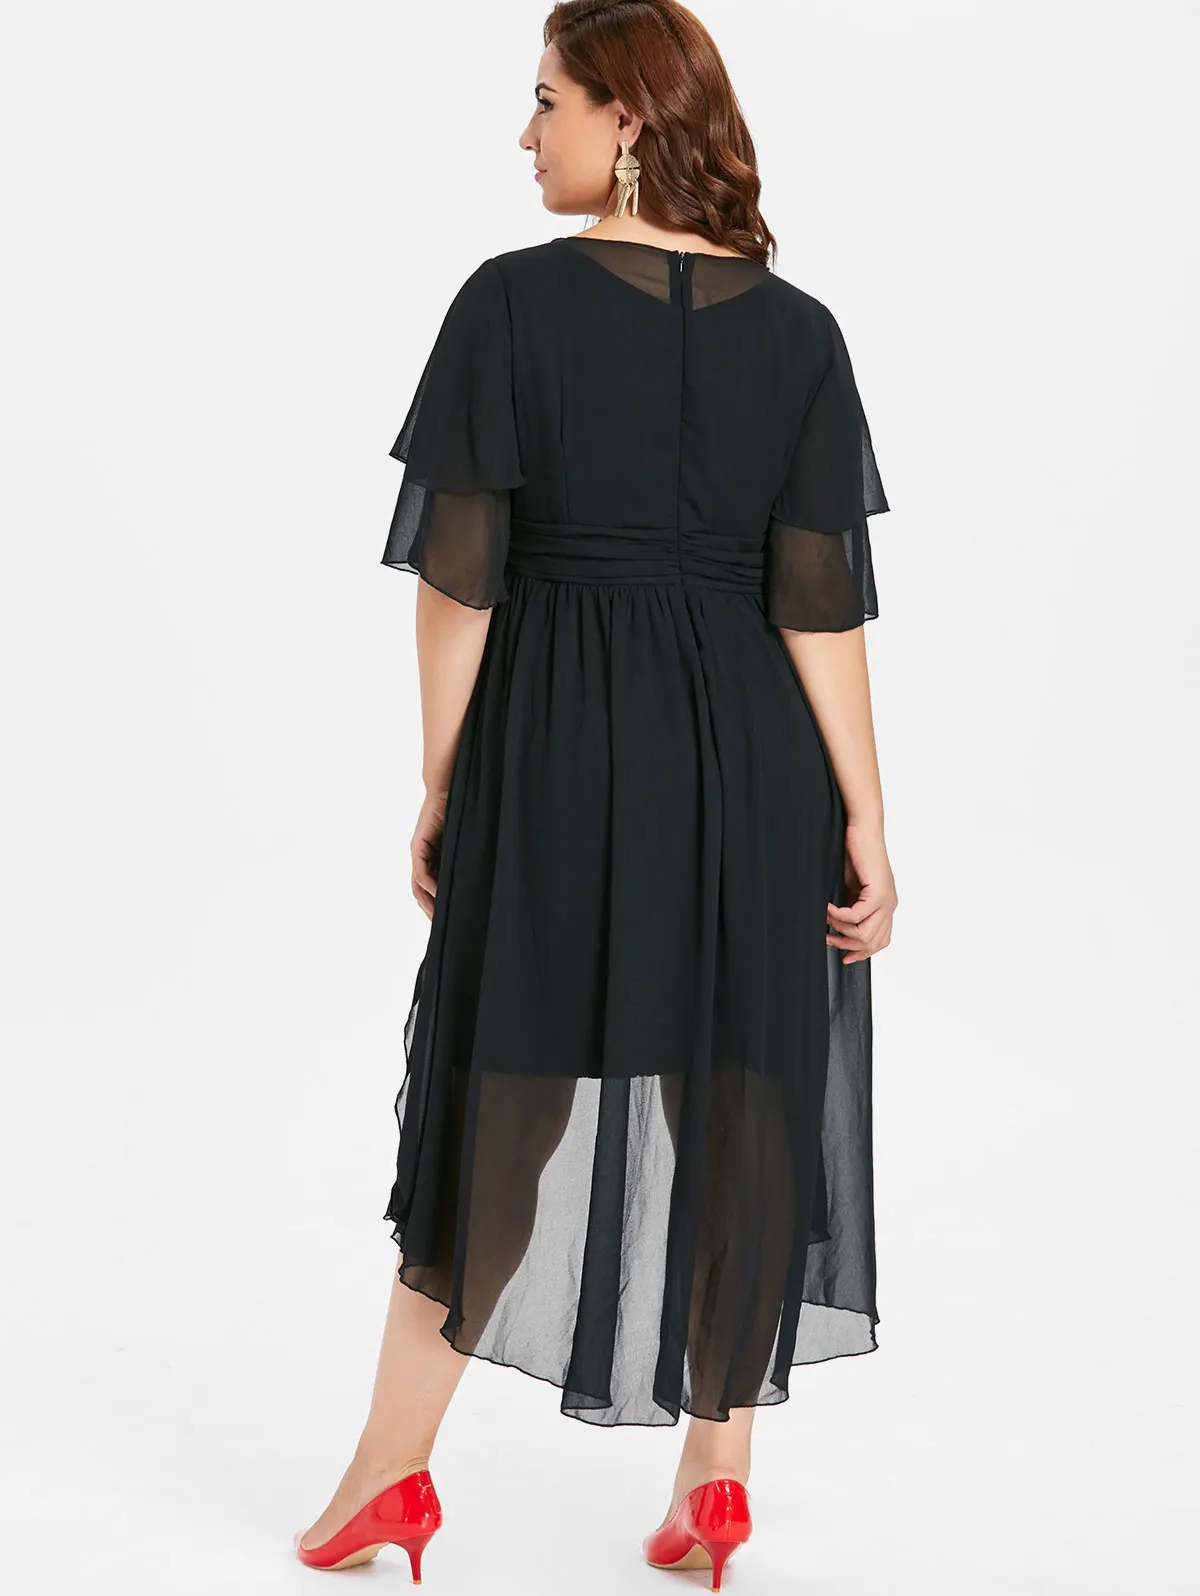 Wipalo размера плюс 5XL с высокой талией и кружевной панелью, платье с высокой низкой талией, элегантное женское вечернее платье до середины голени с короткими рукавами